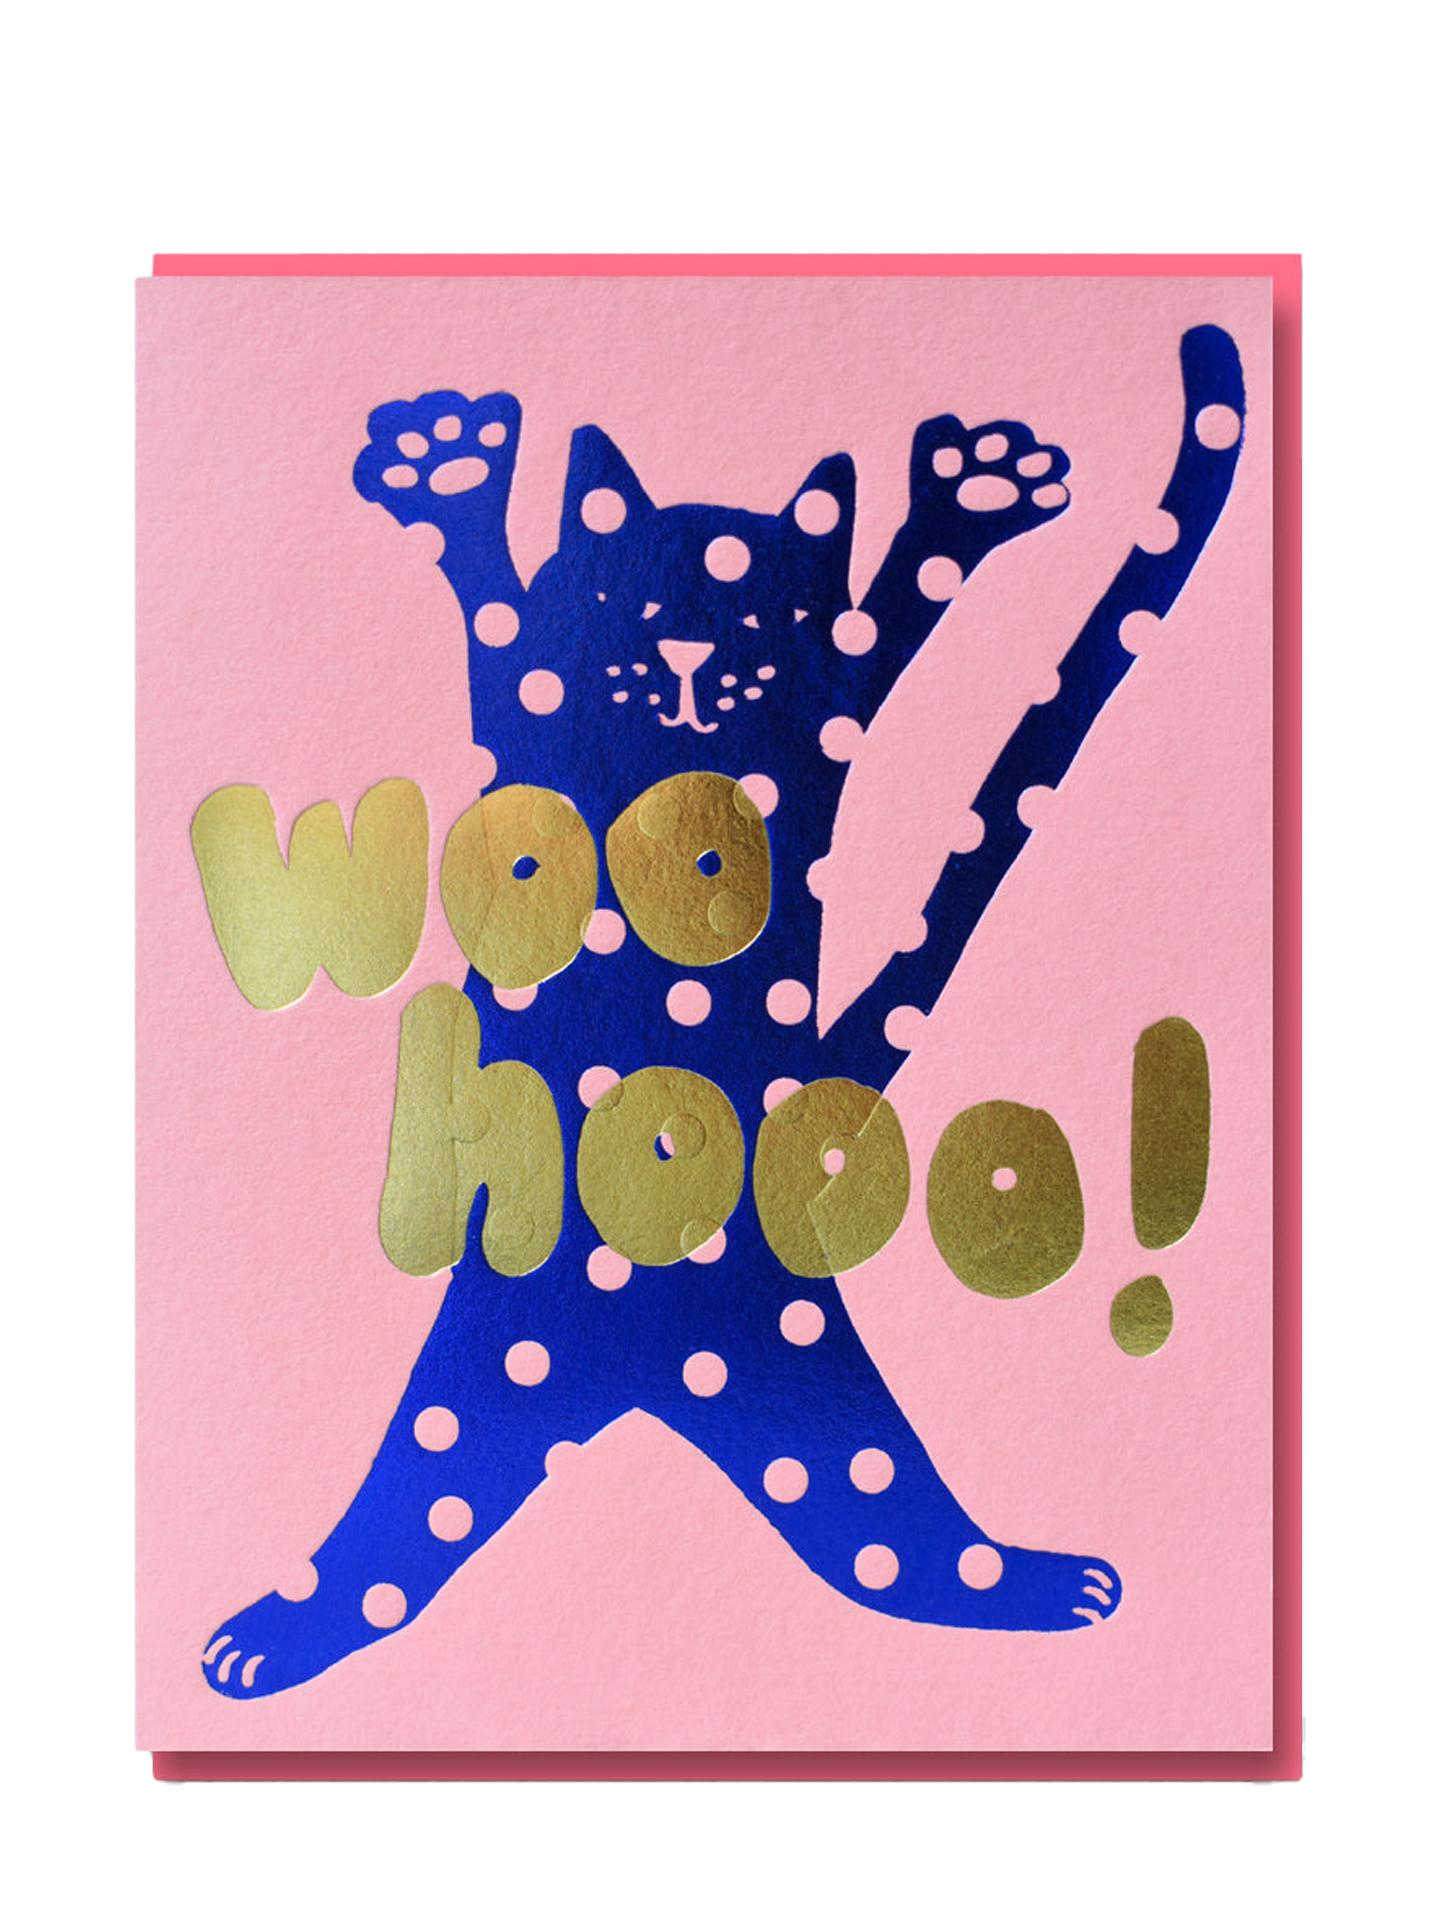 Joyful Spotty Cat Celebration Card